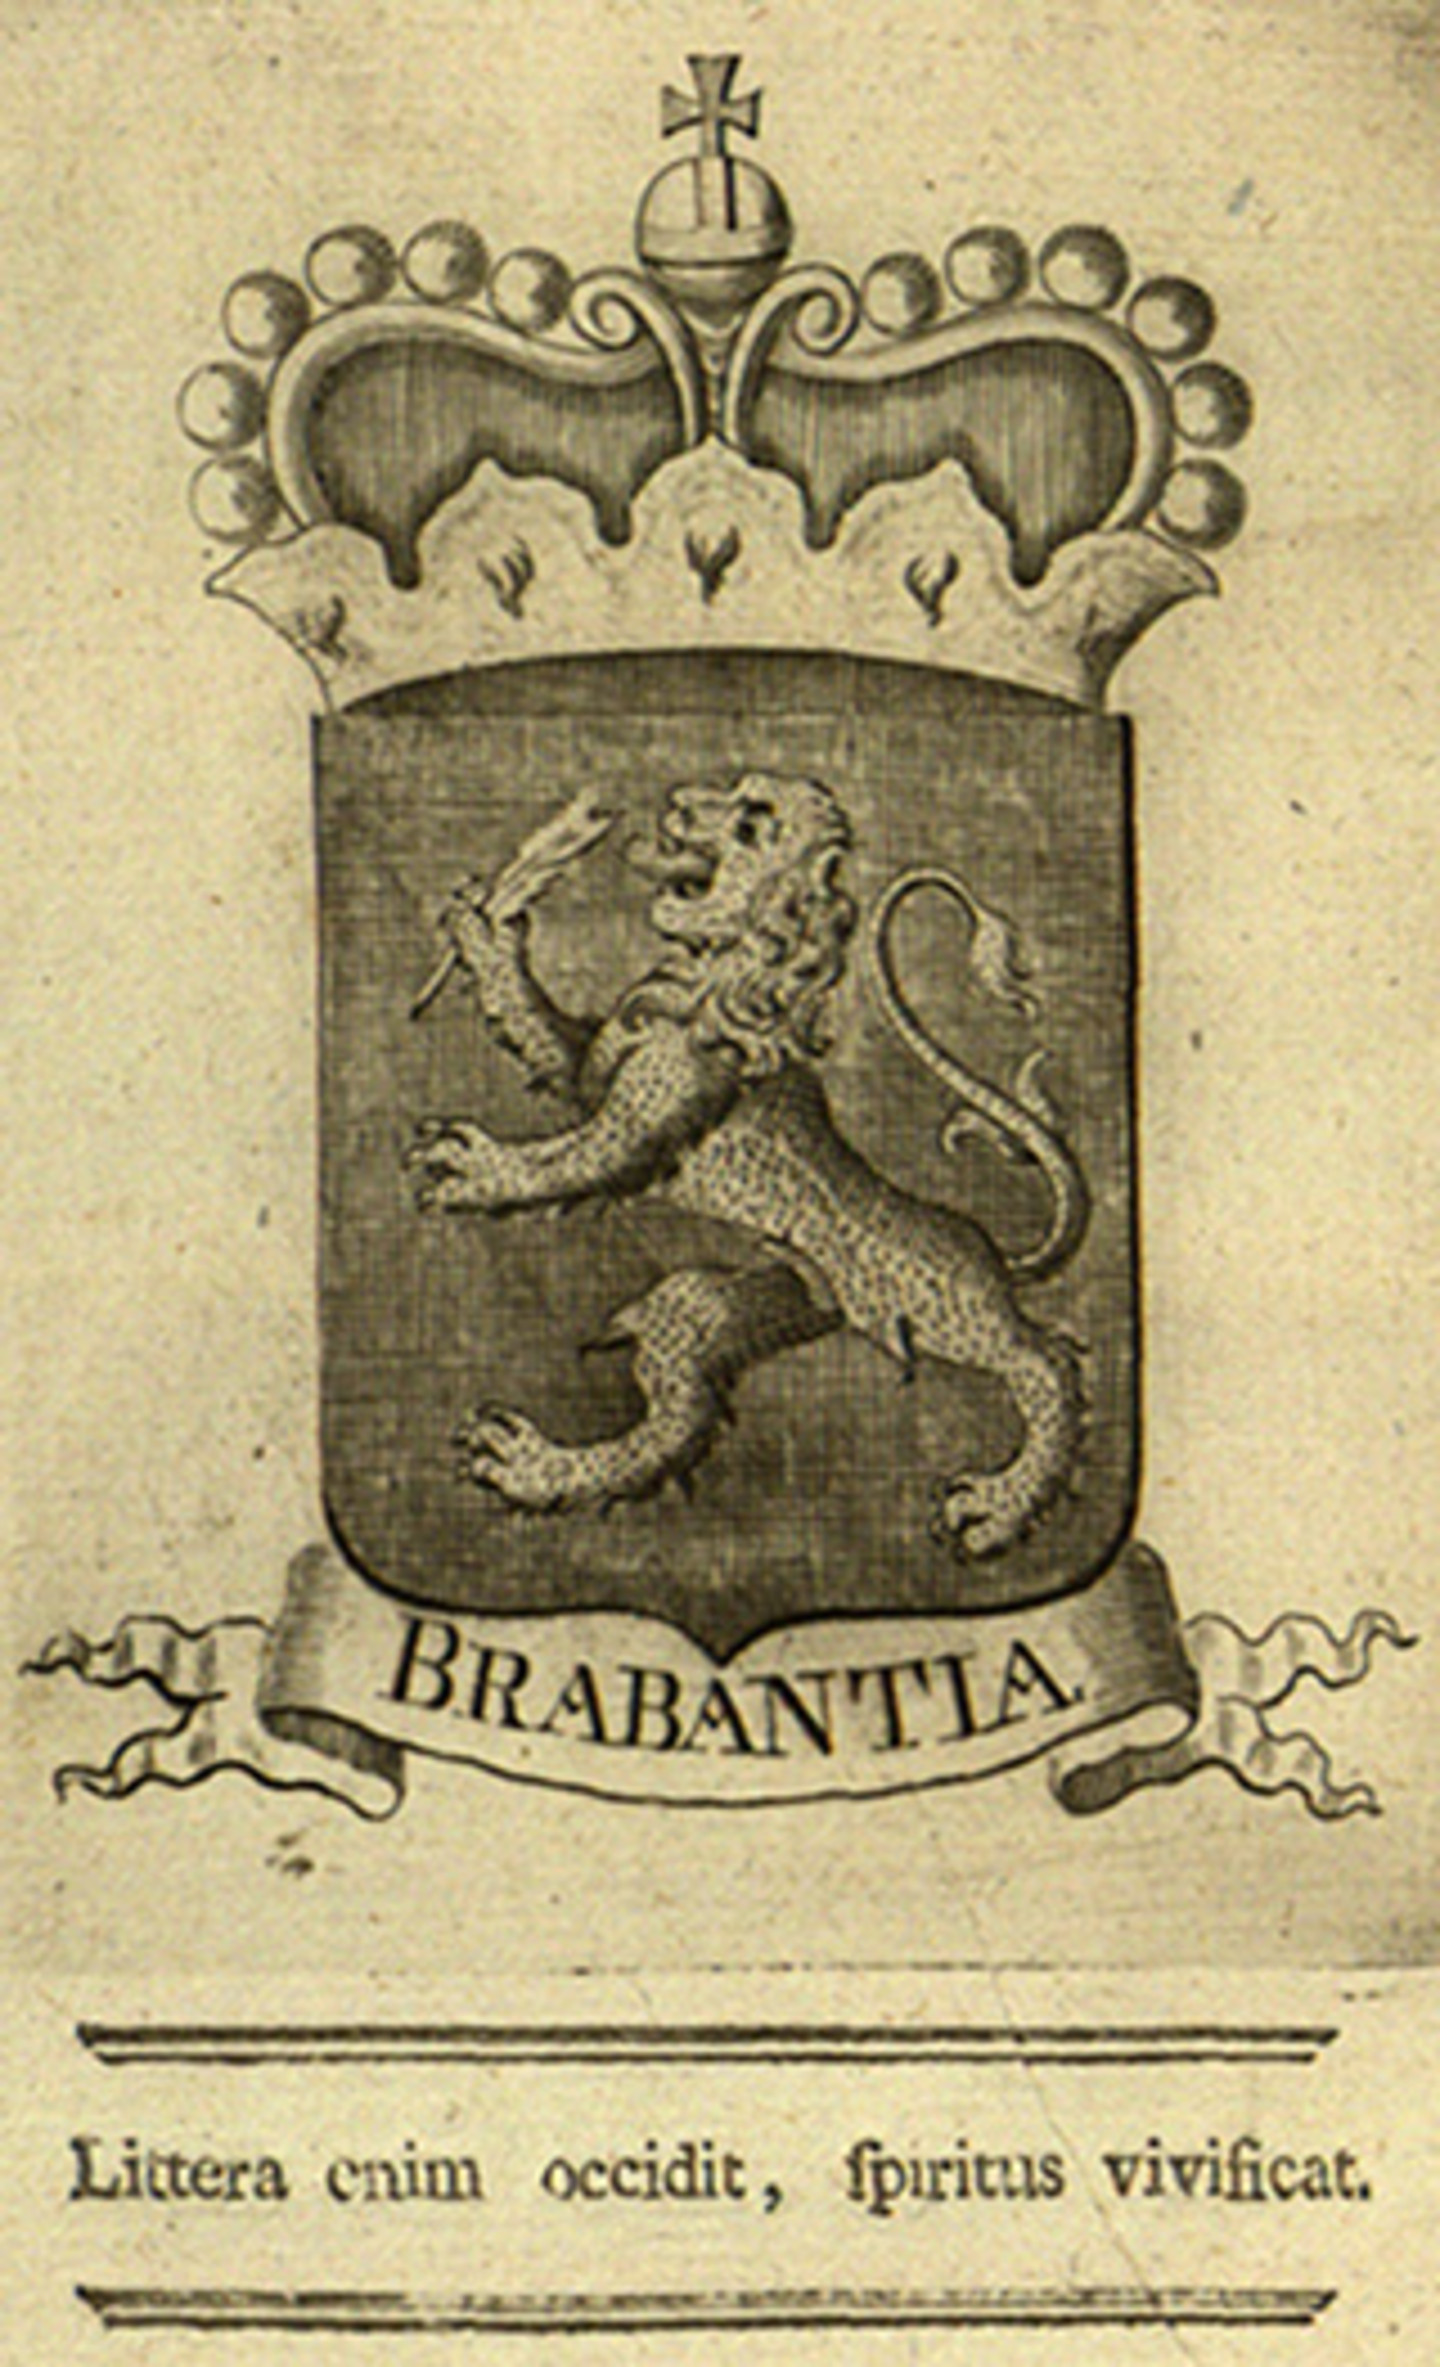 Das Titelblatt "Brabantia - littera enim occidit, spiritus vivificat". Darauf ist ein Löwe der von einer Krone umrahmt wird.